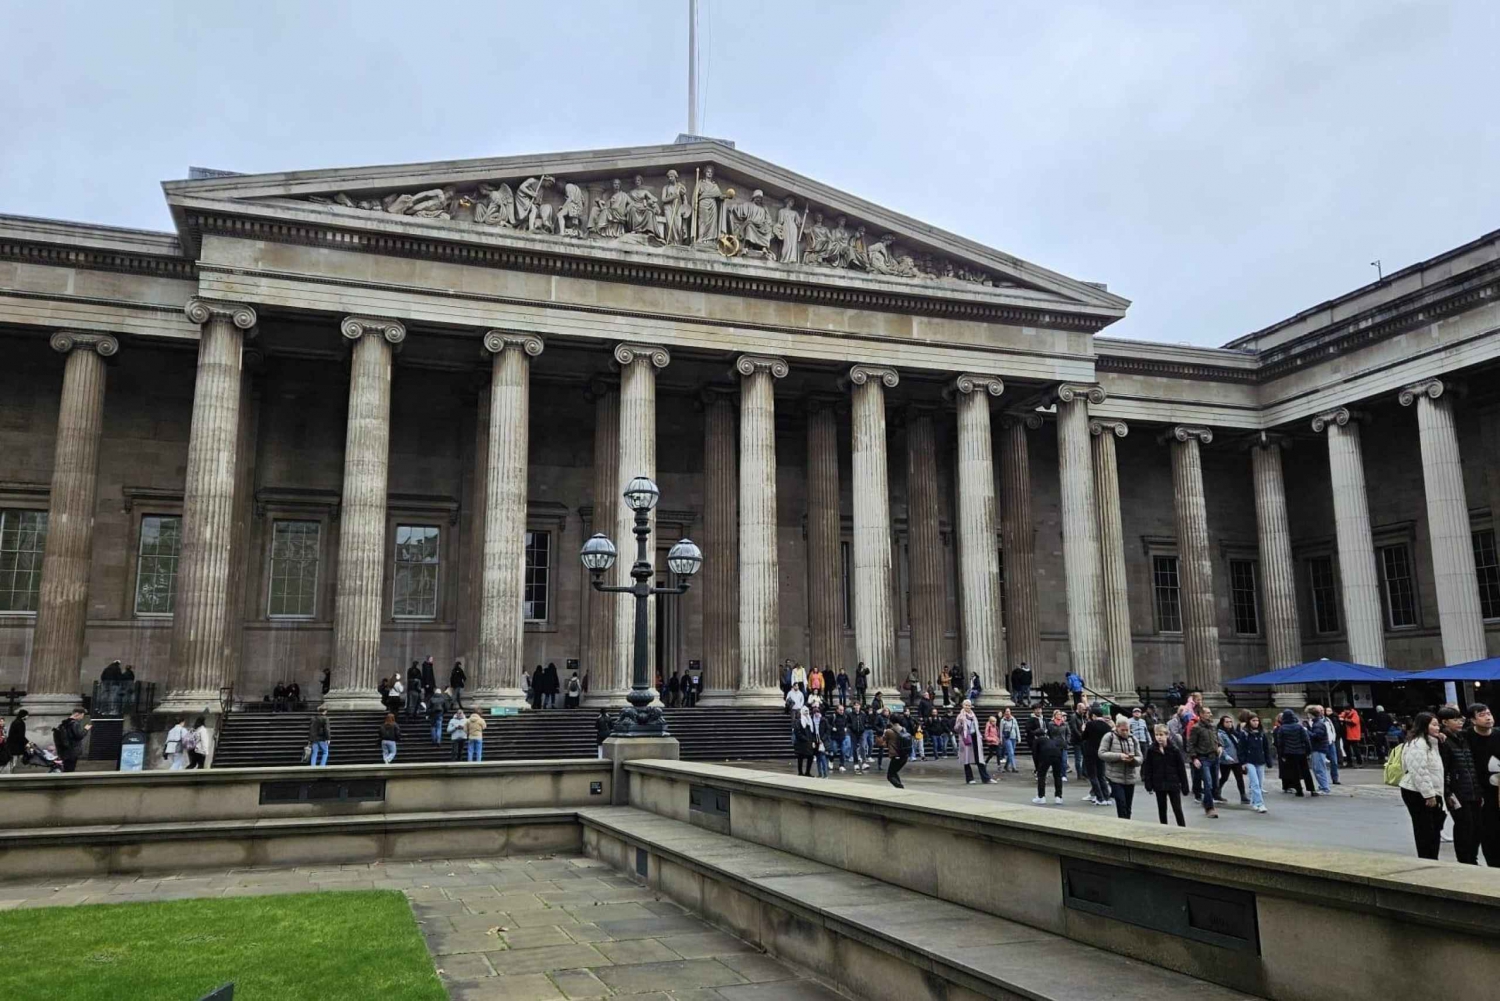 Acesso antecipado ao Museu Britânico, Trafalgar Square e Covent Garden